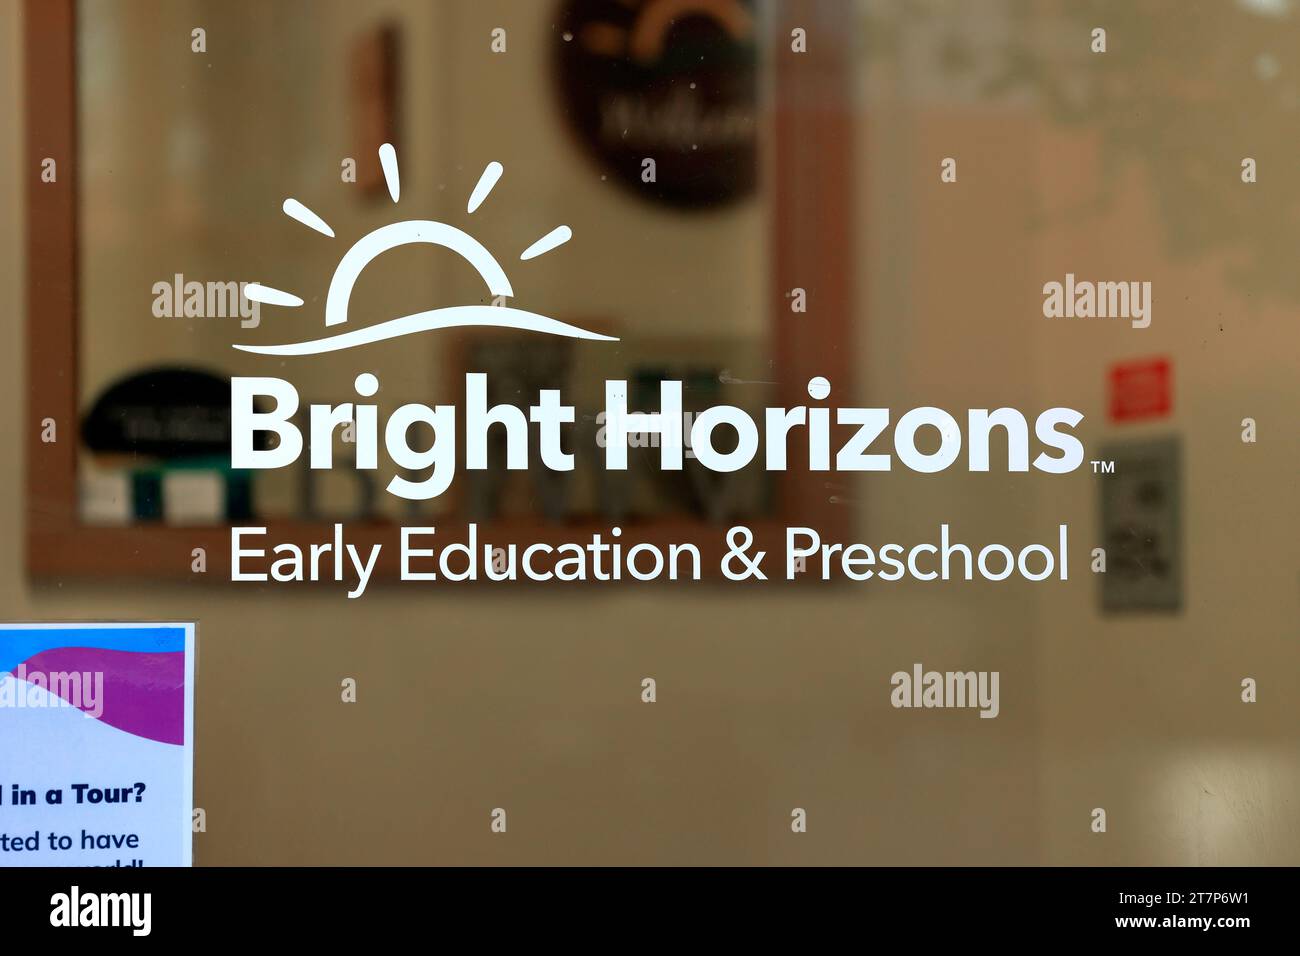 Fensterschilder für die Bright Horizons-Kette von Kinderbetreuern im Vorschulalter. Stockfoto